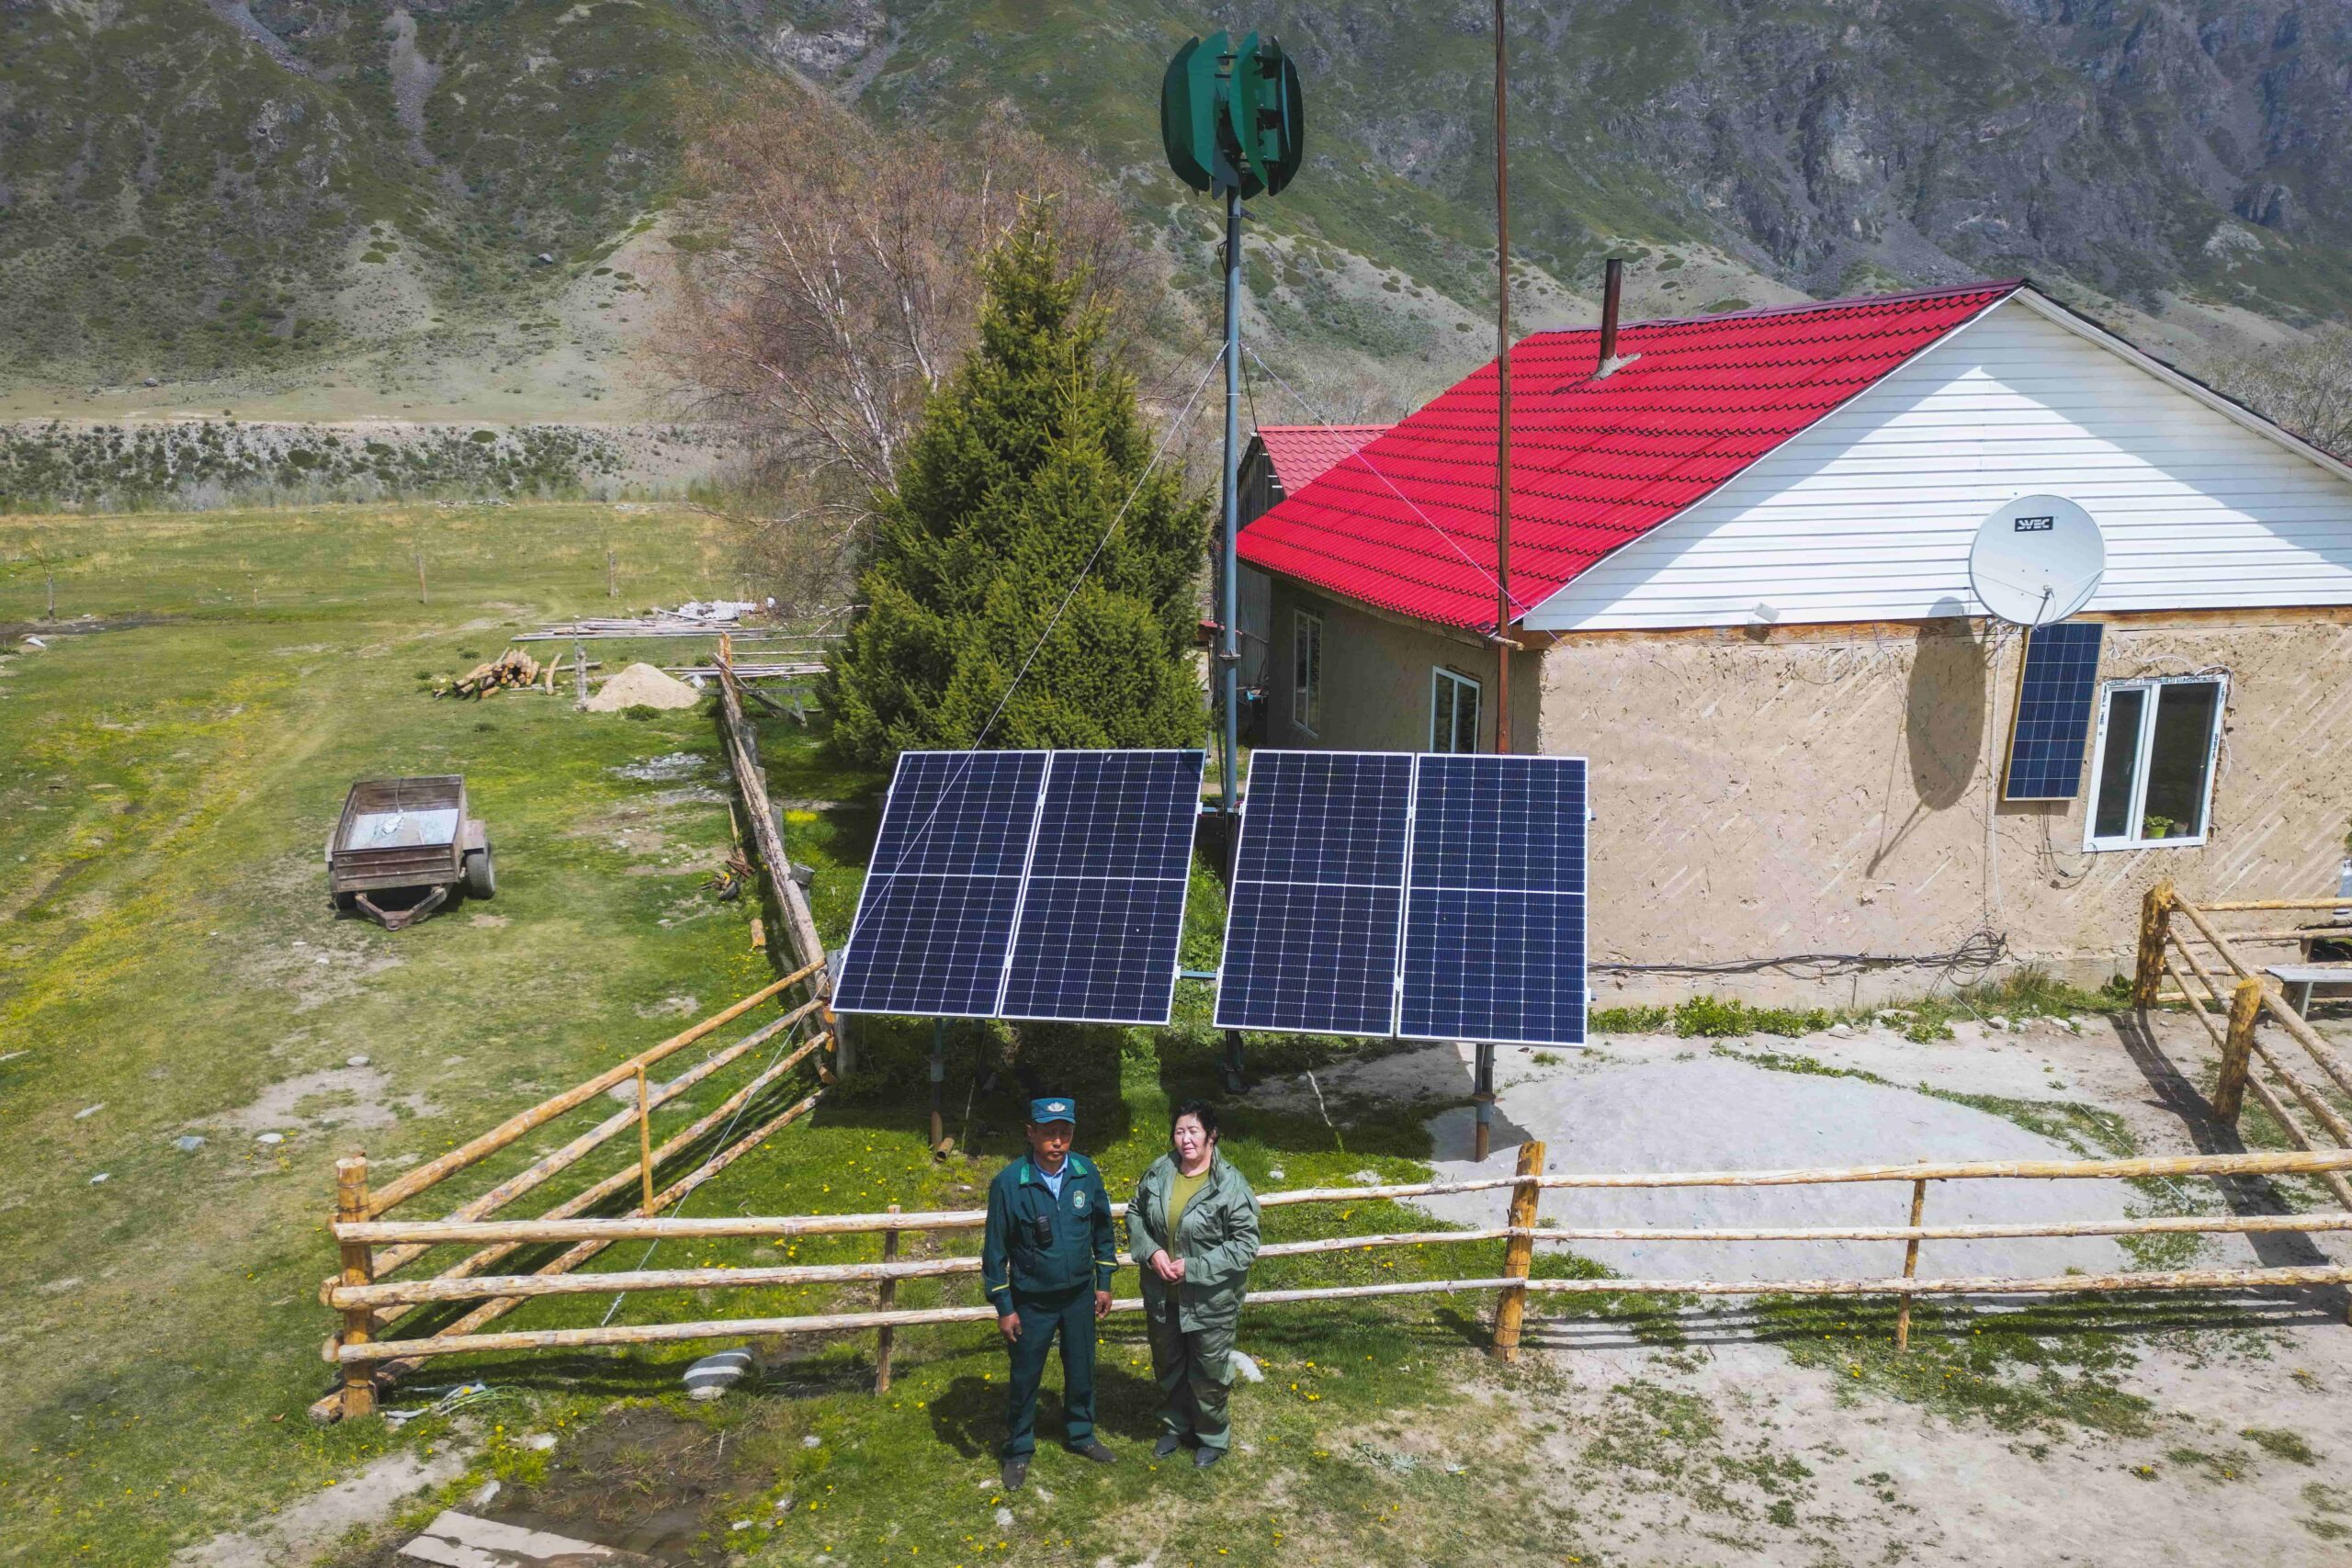 Для решения проблемы нехватки электроэнергии в Кольсайском национальном парке по инициативе ПРООН и Глобального экологического фонда (ГЭФ) были установлены современные ветряные и солнечные электростанции. Фото предоставлено ПРООН в Казахстане.